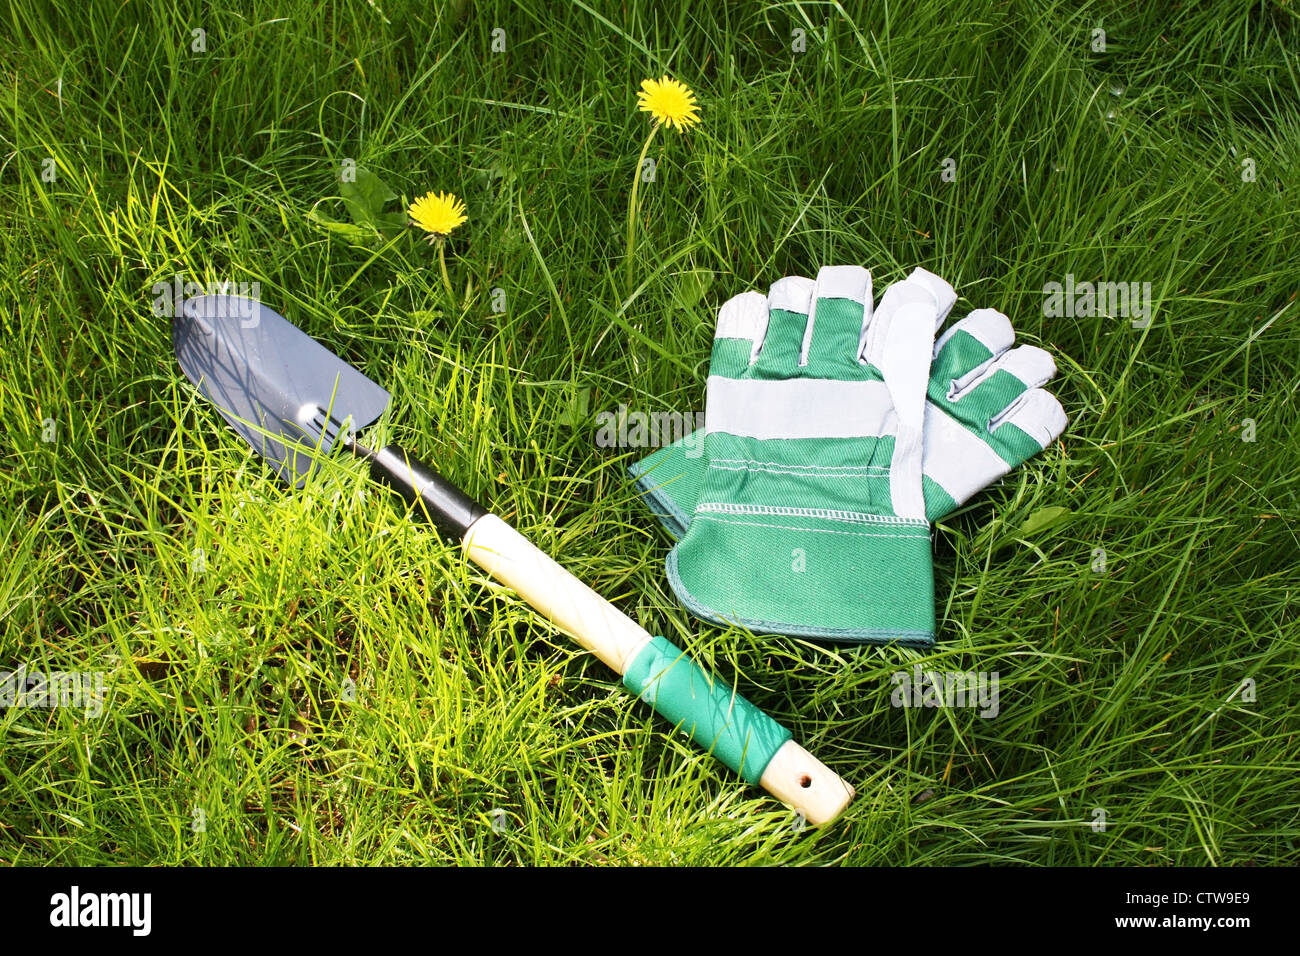 Gartengeräte auf dem grünen Rasen Stockfoto